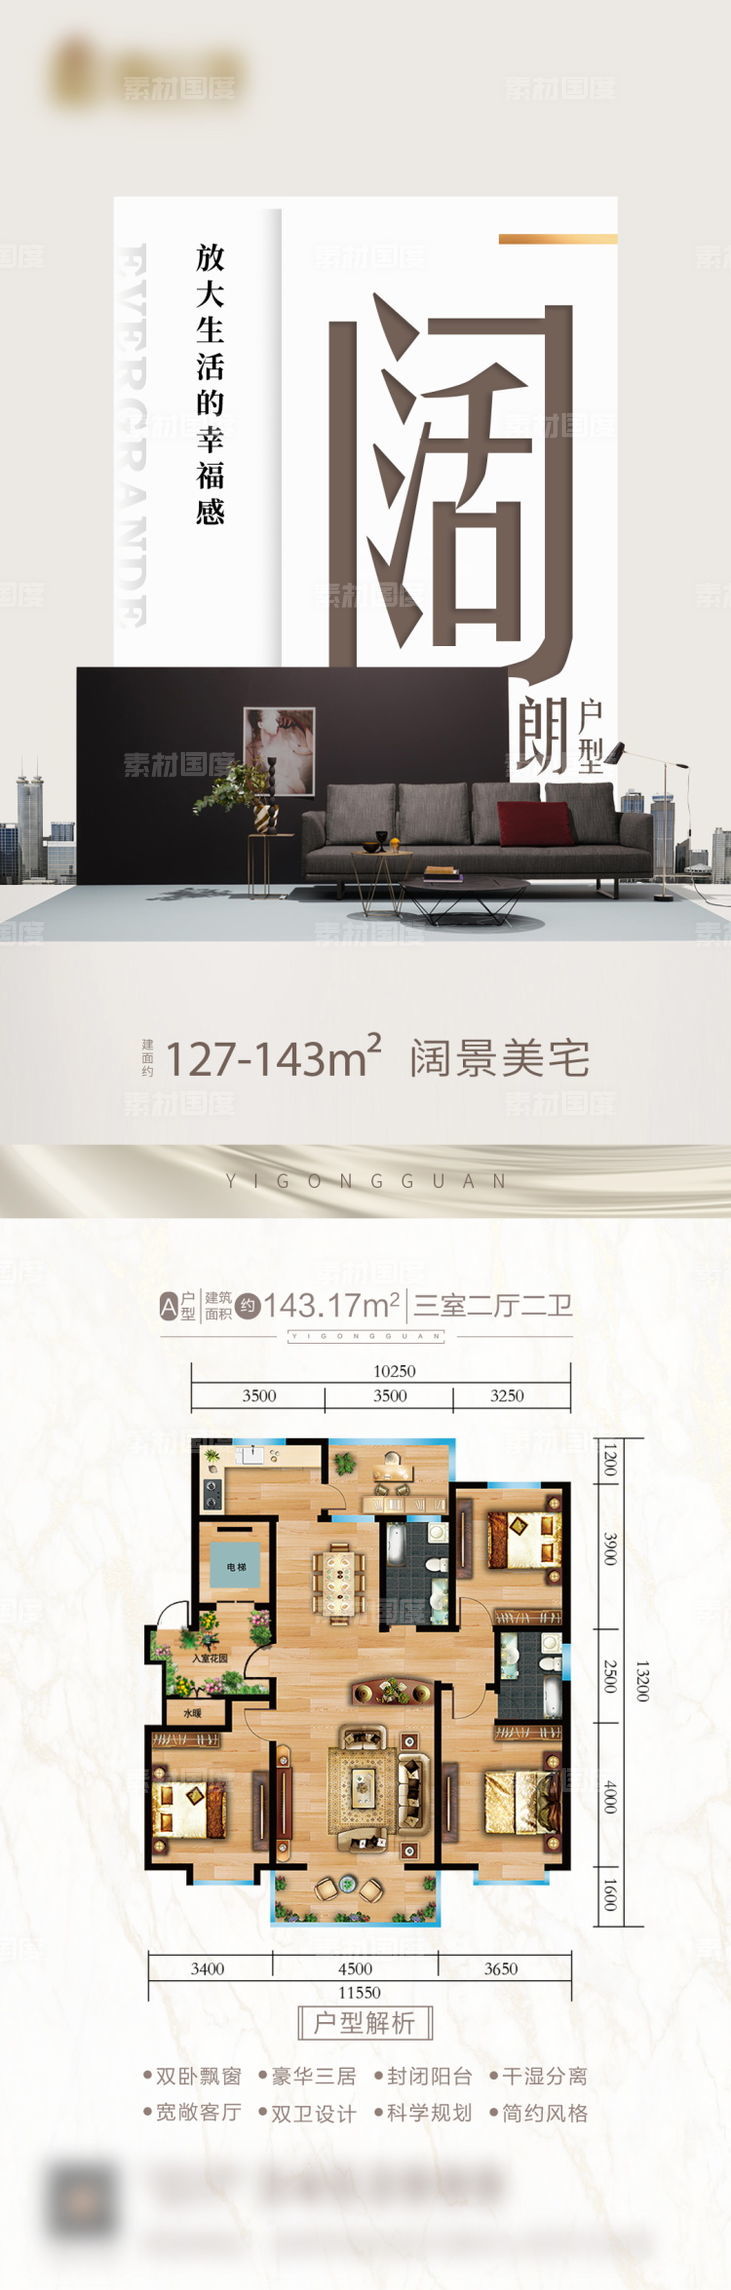 房地产海报地产广告高端豪宅PSD广告分层设计素材